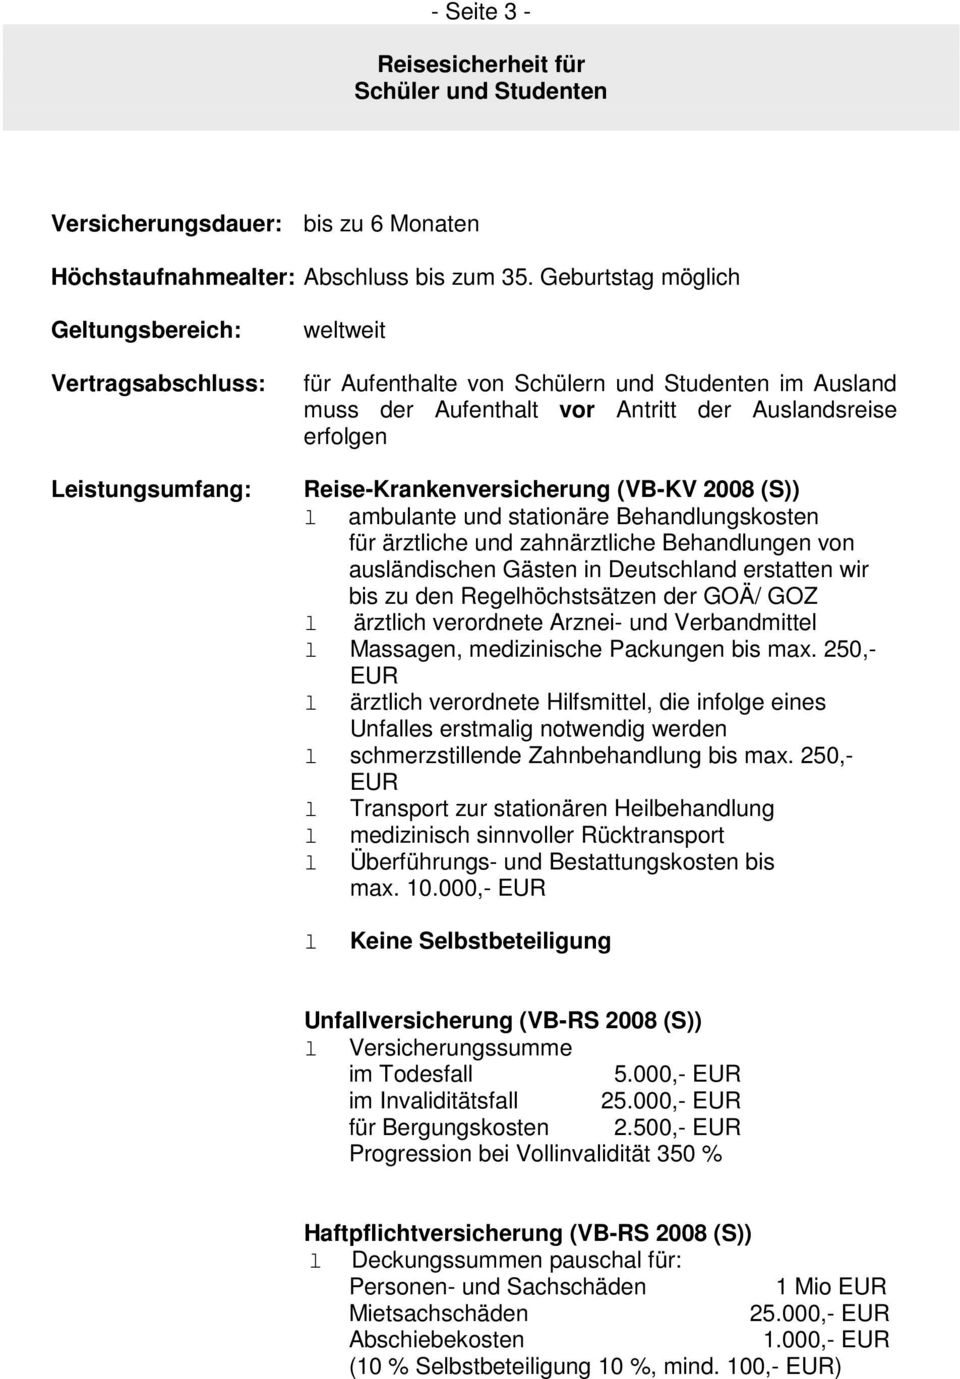 Reise-Krankenversicherung (VB-KV 2008 (S)) l ambulante und stationäre Behandlungskosten für ärztliche und zahnärztliche Behandlungen von ausländischen Gästen in Deutschland erstatten wir bis zu den